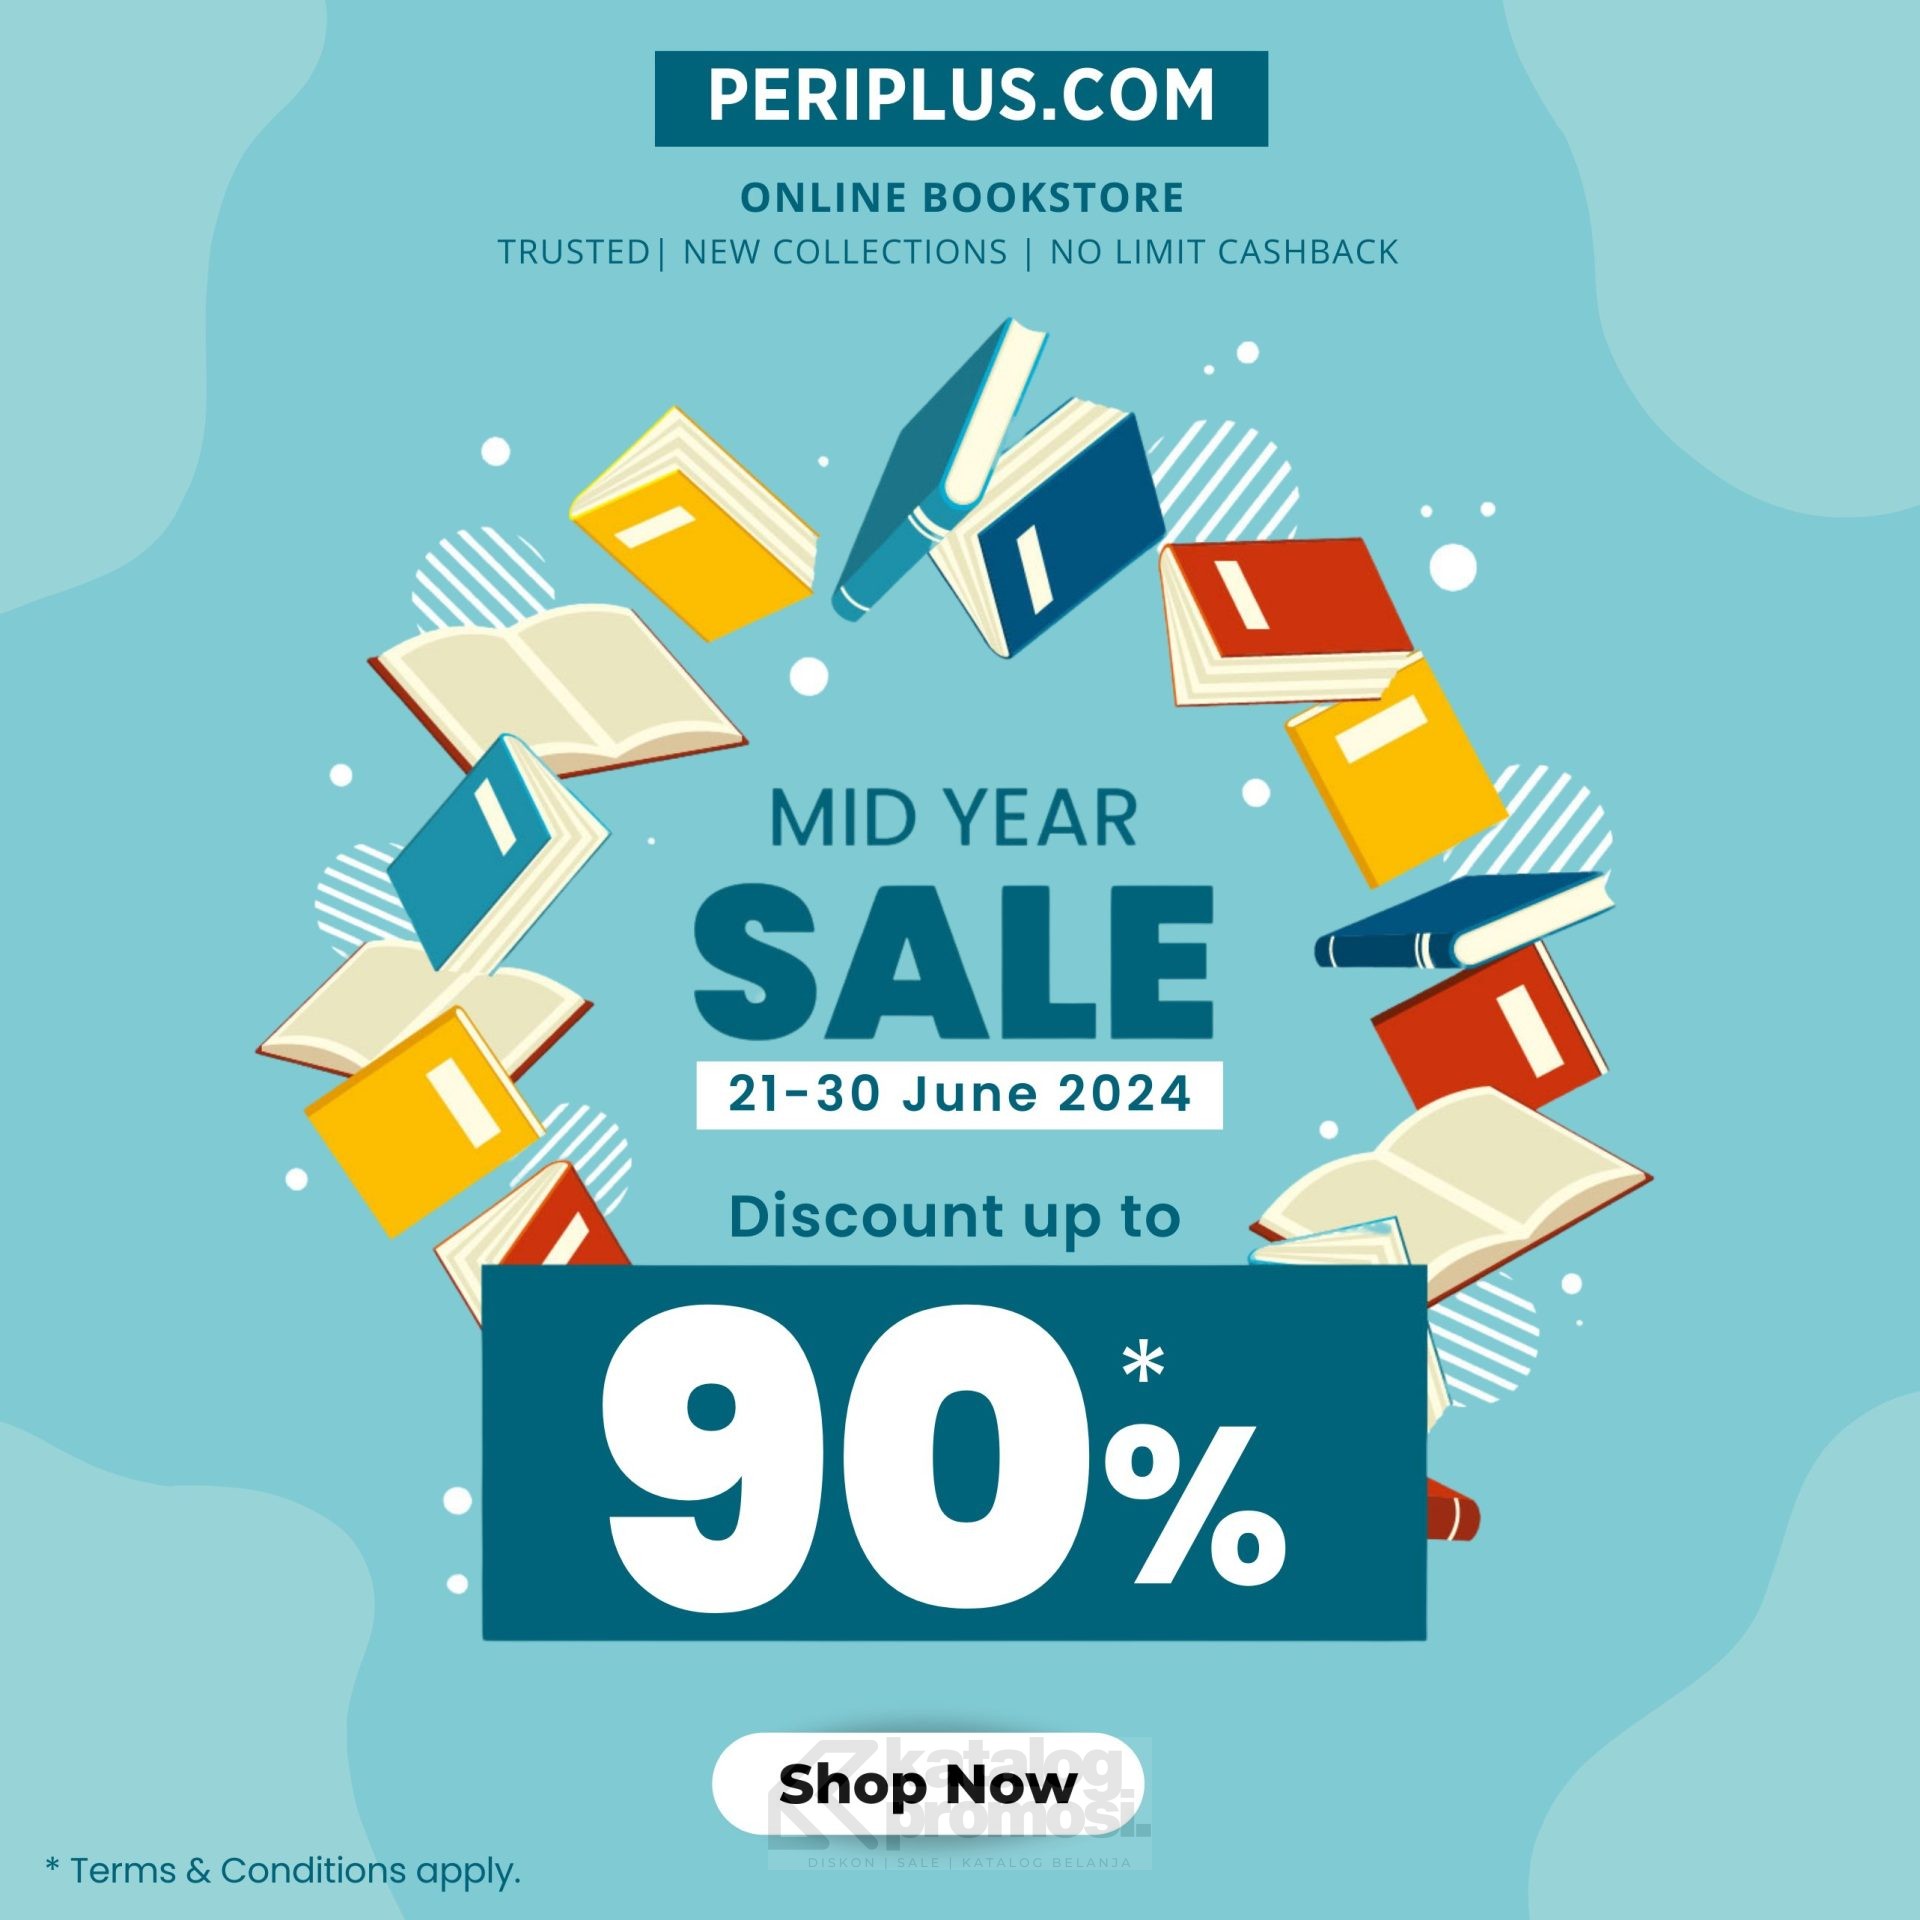 promo_buku_periplus_buku_bookstore_mid_year_sale.jpg